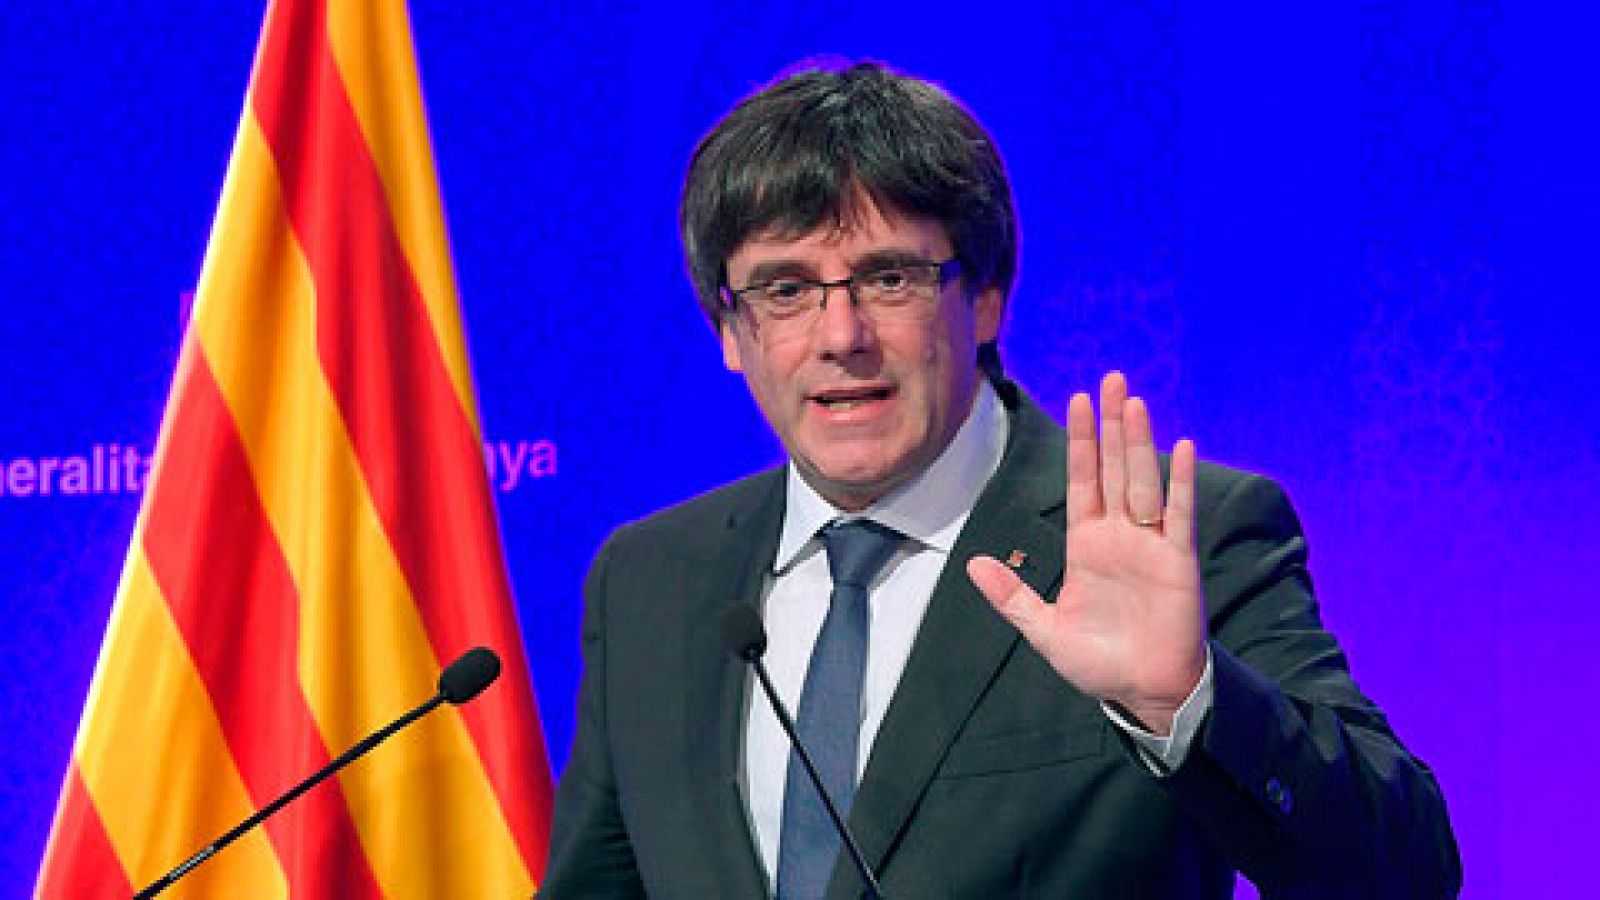 Referéndum de independencia en Cataluña | Puigdemont aboga por "aplicar" el resultado "vinculante" del 1-O